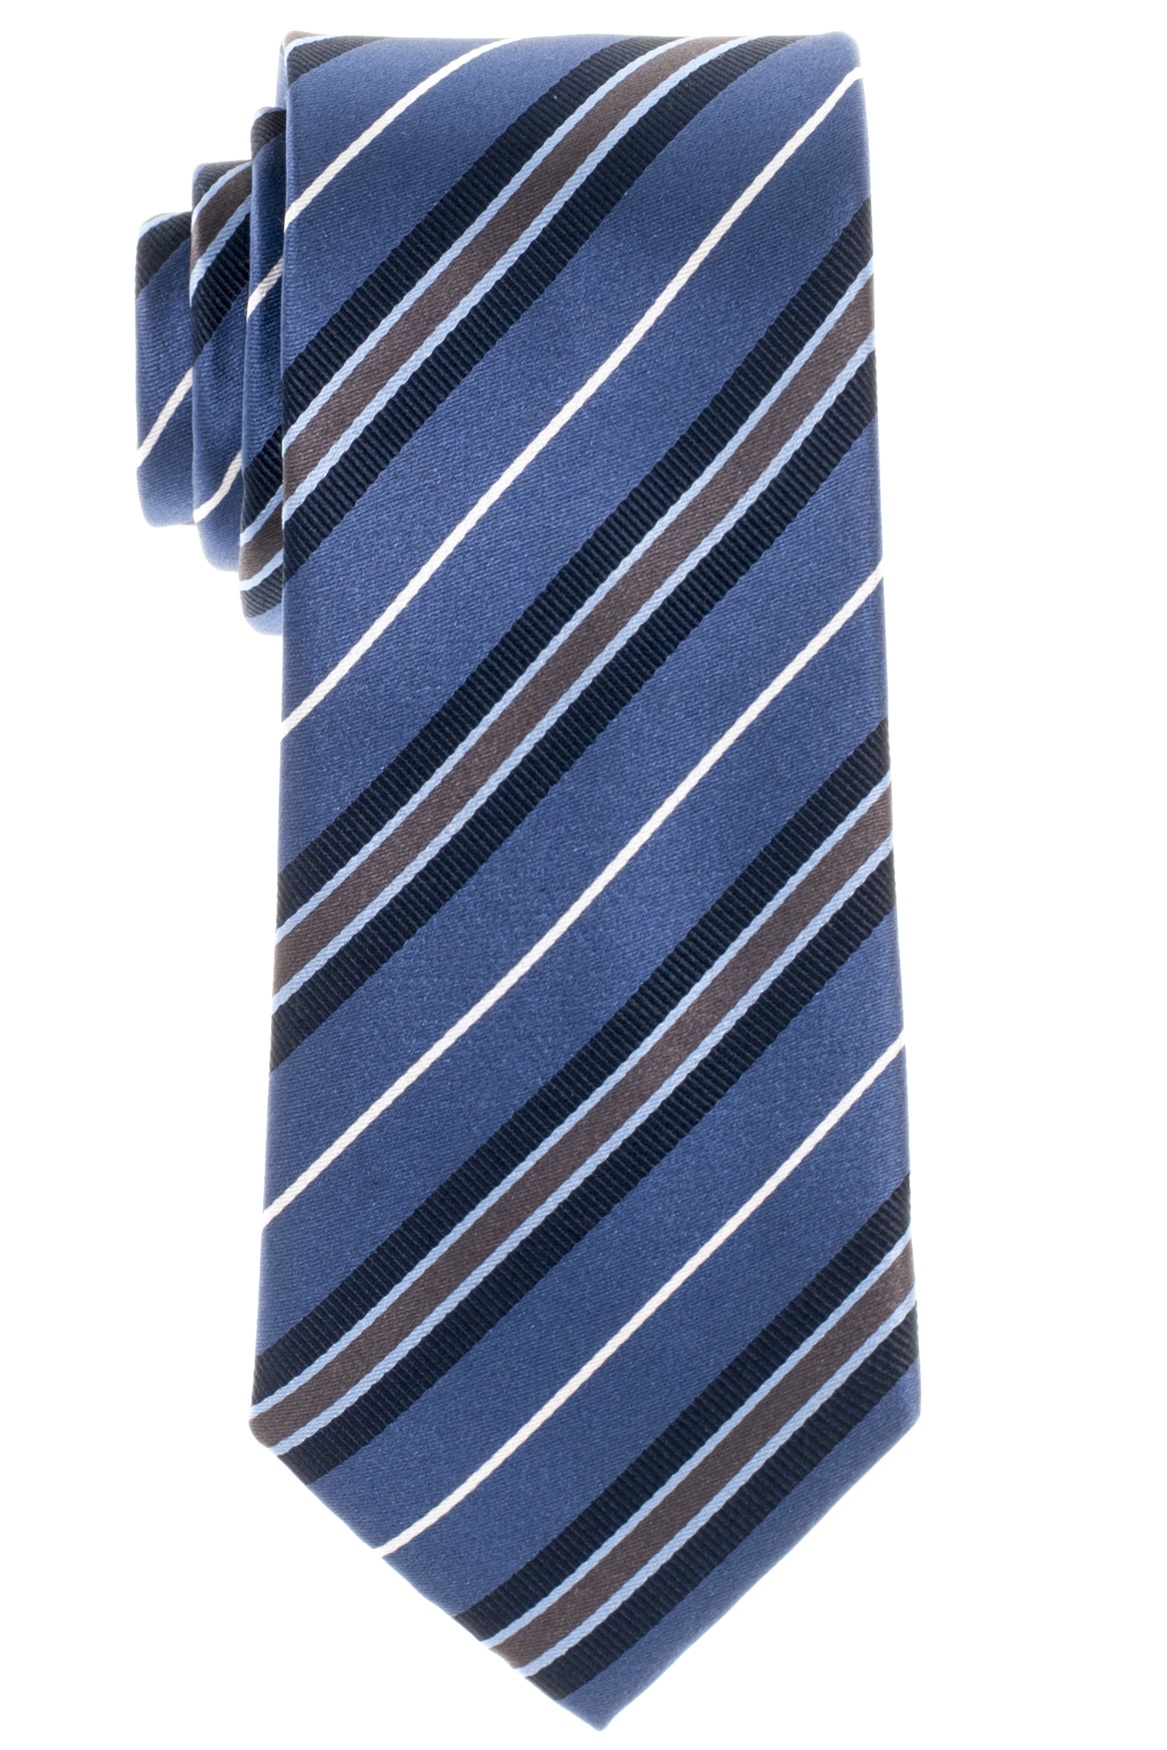 Gestreifte Eterna Krawatte in blau | grau-braun Olymp marine und und cm ETERNA Lang + 68 Hemden Extra weiß 72